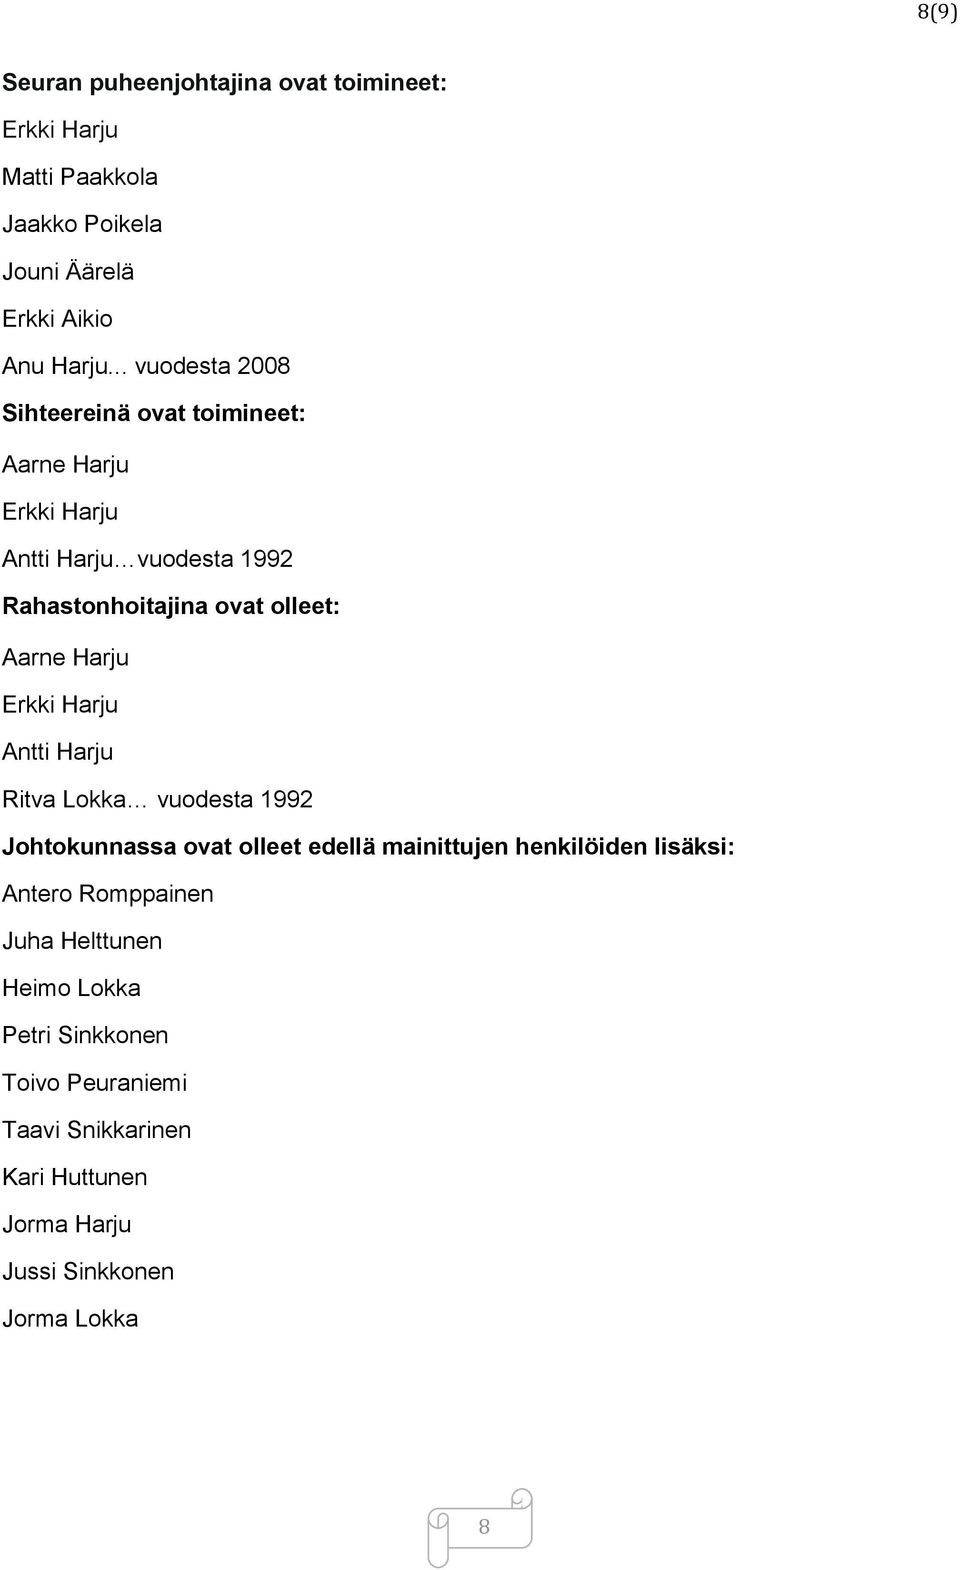 Harju Erkki Harju Antti Harju Ritva Lokka vuodesta 1992 Johtokunnassa ovat olleet edellä mainittujen henkilöiden lisäksi: Antero